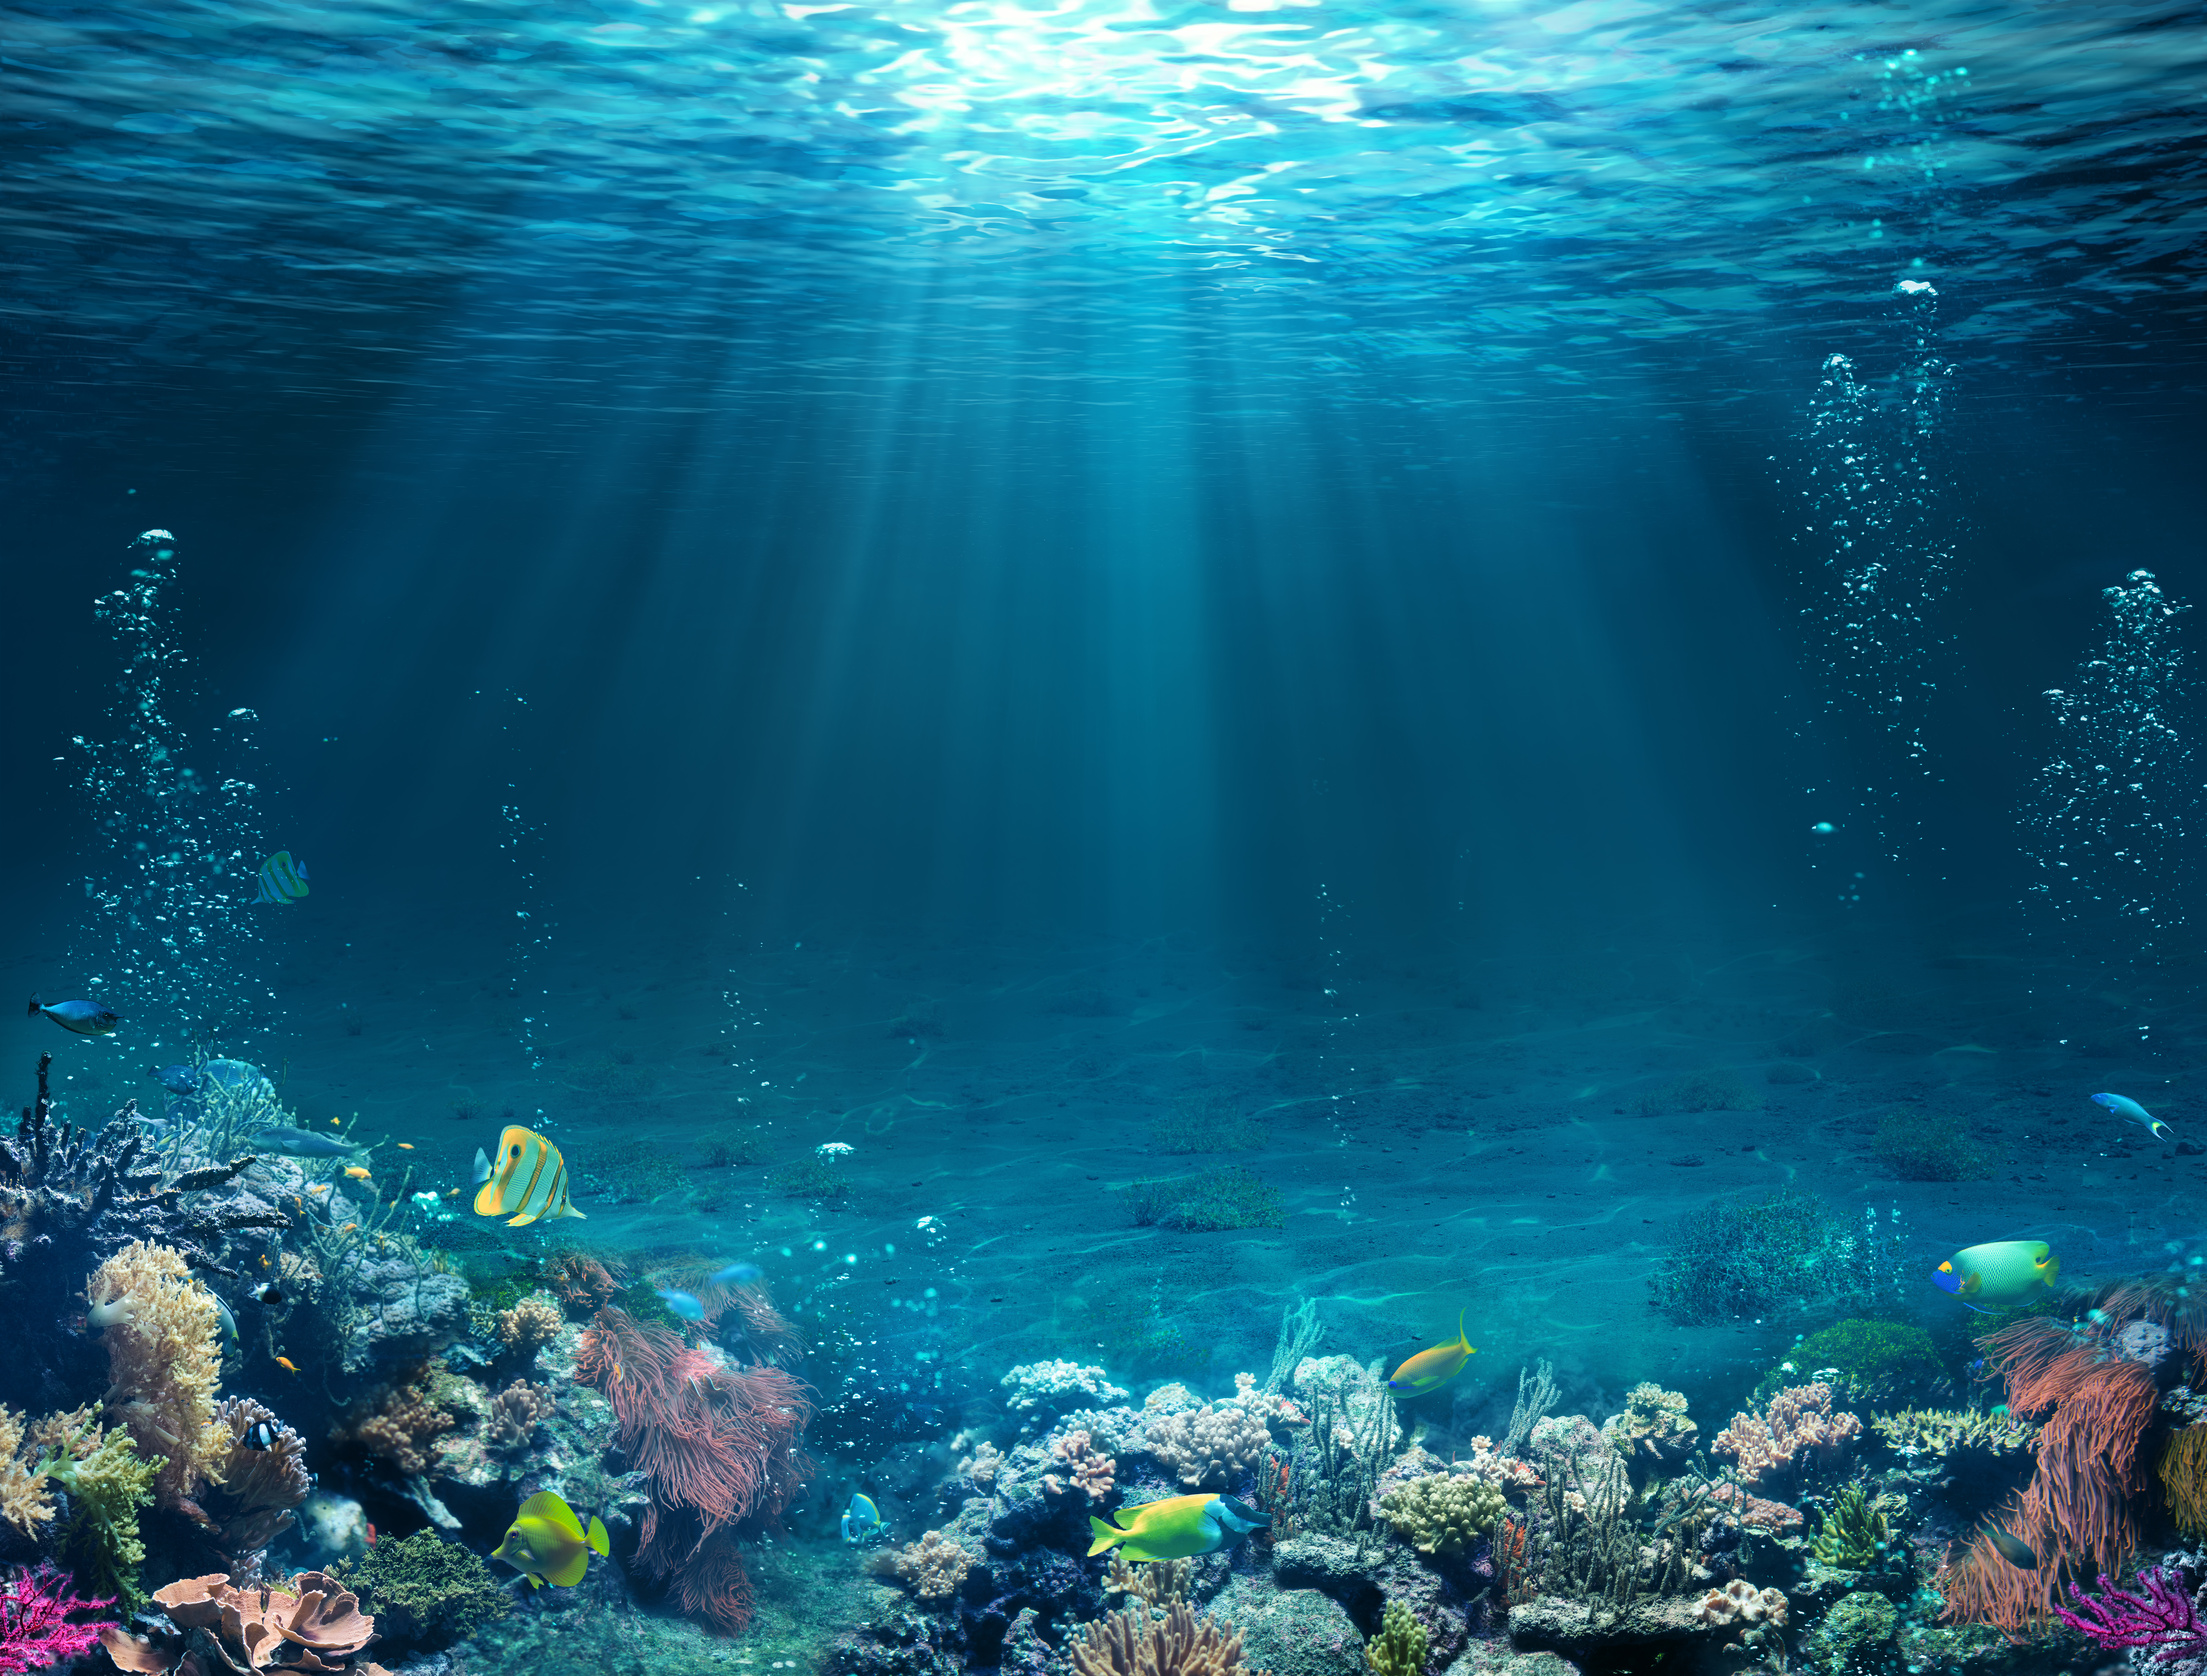 L'océan souffre. Les scientifiques se disent interloqués par l'ampleur, l'intensité et la rapidité du changement. © Romolo Tavani, Fotolia